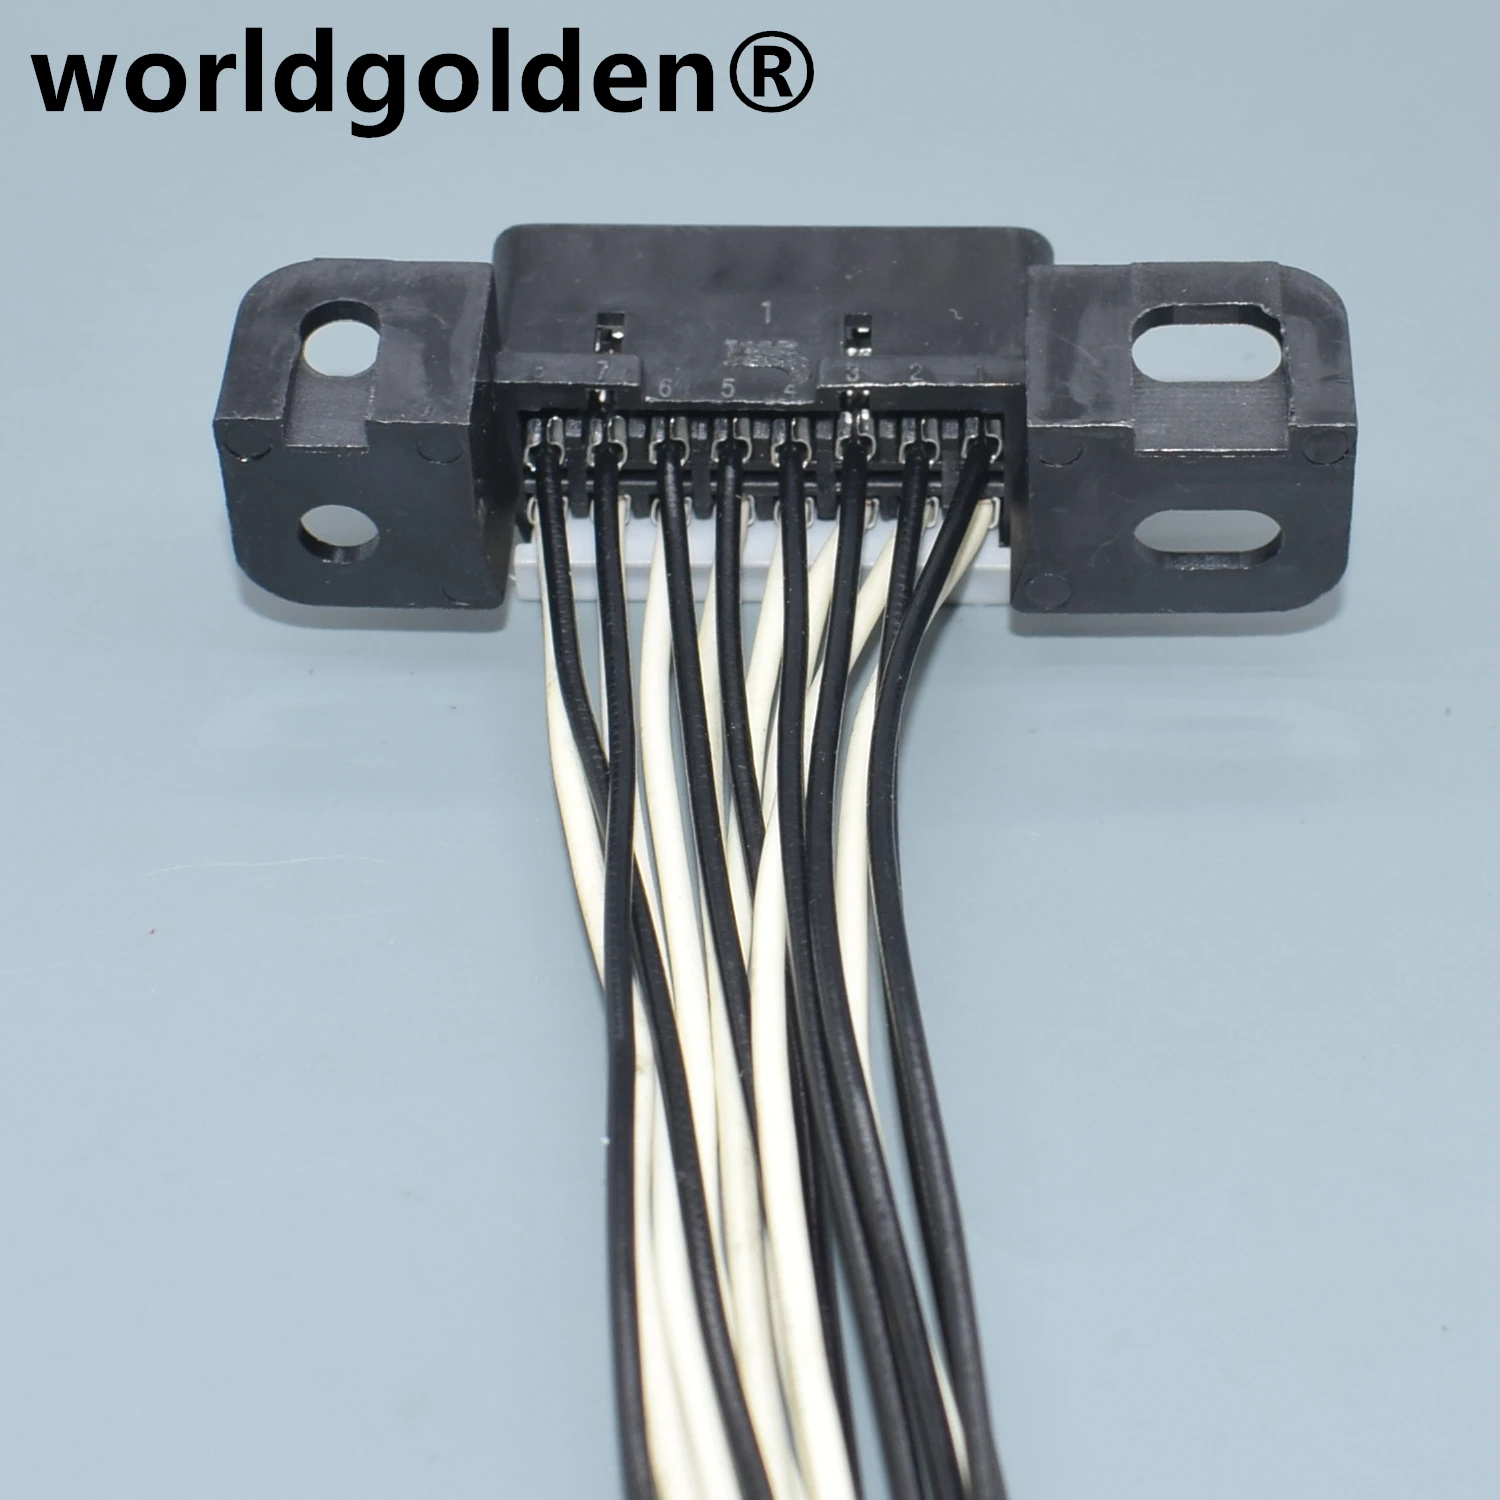 worldgolden 16 Pini Automobile Negru de sex Feminin Conector OBD2 Sârmă Prize Adaptor Obd Instrument de Diagnosticare Cu 20cm Linie MG610761-5 - 0